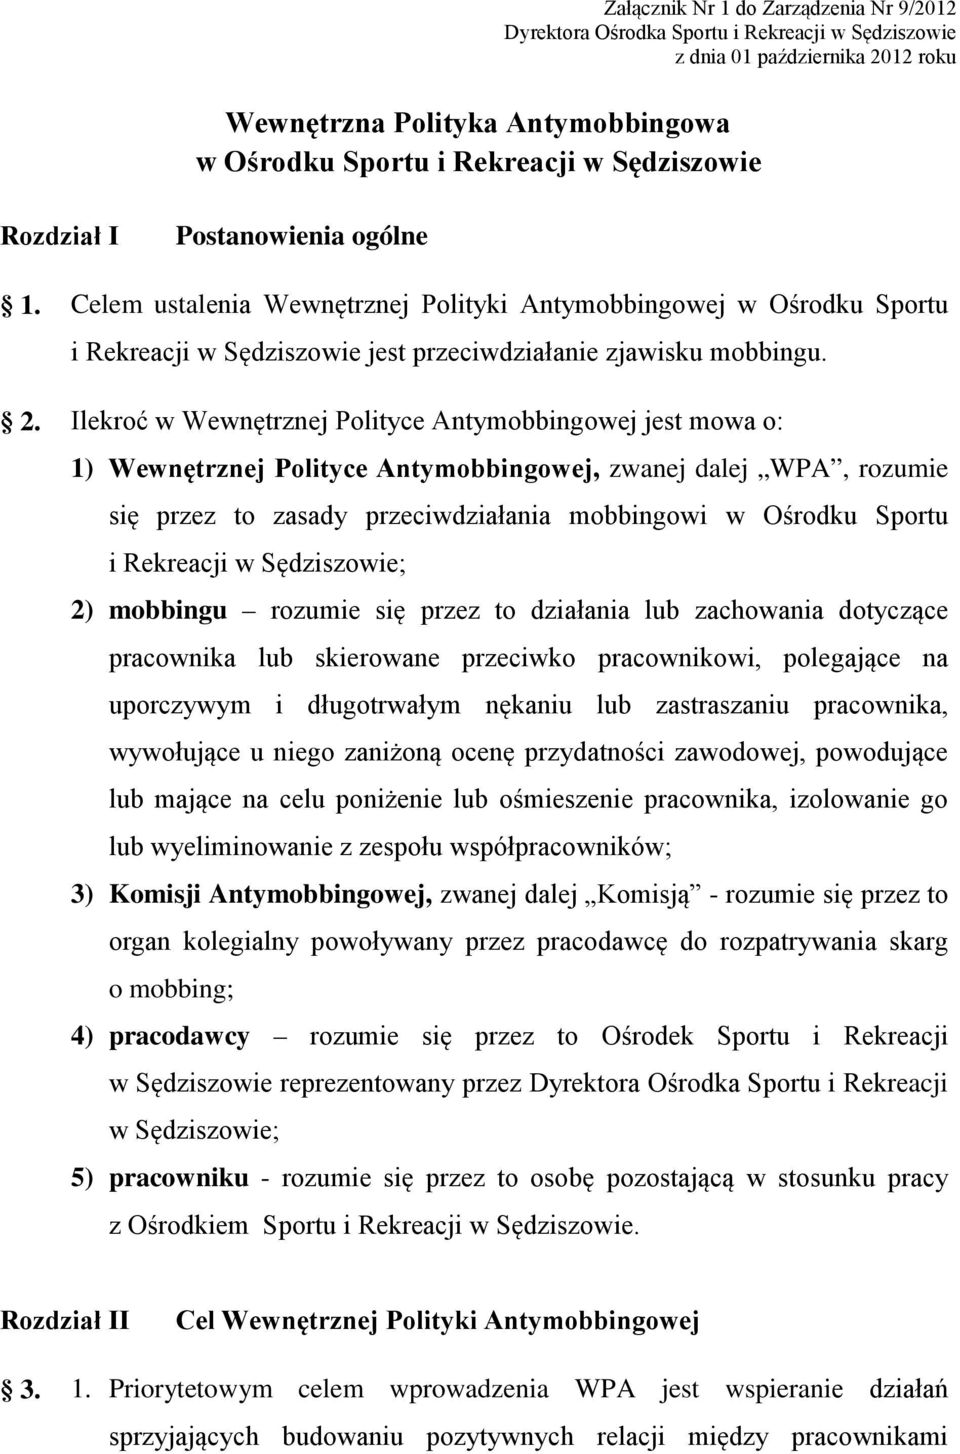 Ilekroć w Wewnętrznej Polityce Antymobbingowej jest mowa o: 1) Wewnętrznej Polityce Antymobbingowej, zwanej dalej WPA, rozumie się przez to zasady przeciwdziałania mobbingowi w Ośrodku Sportu i